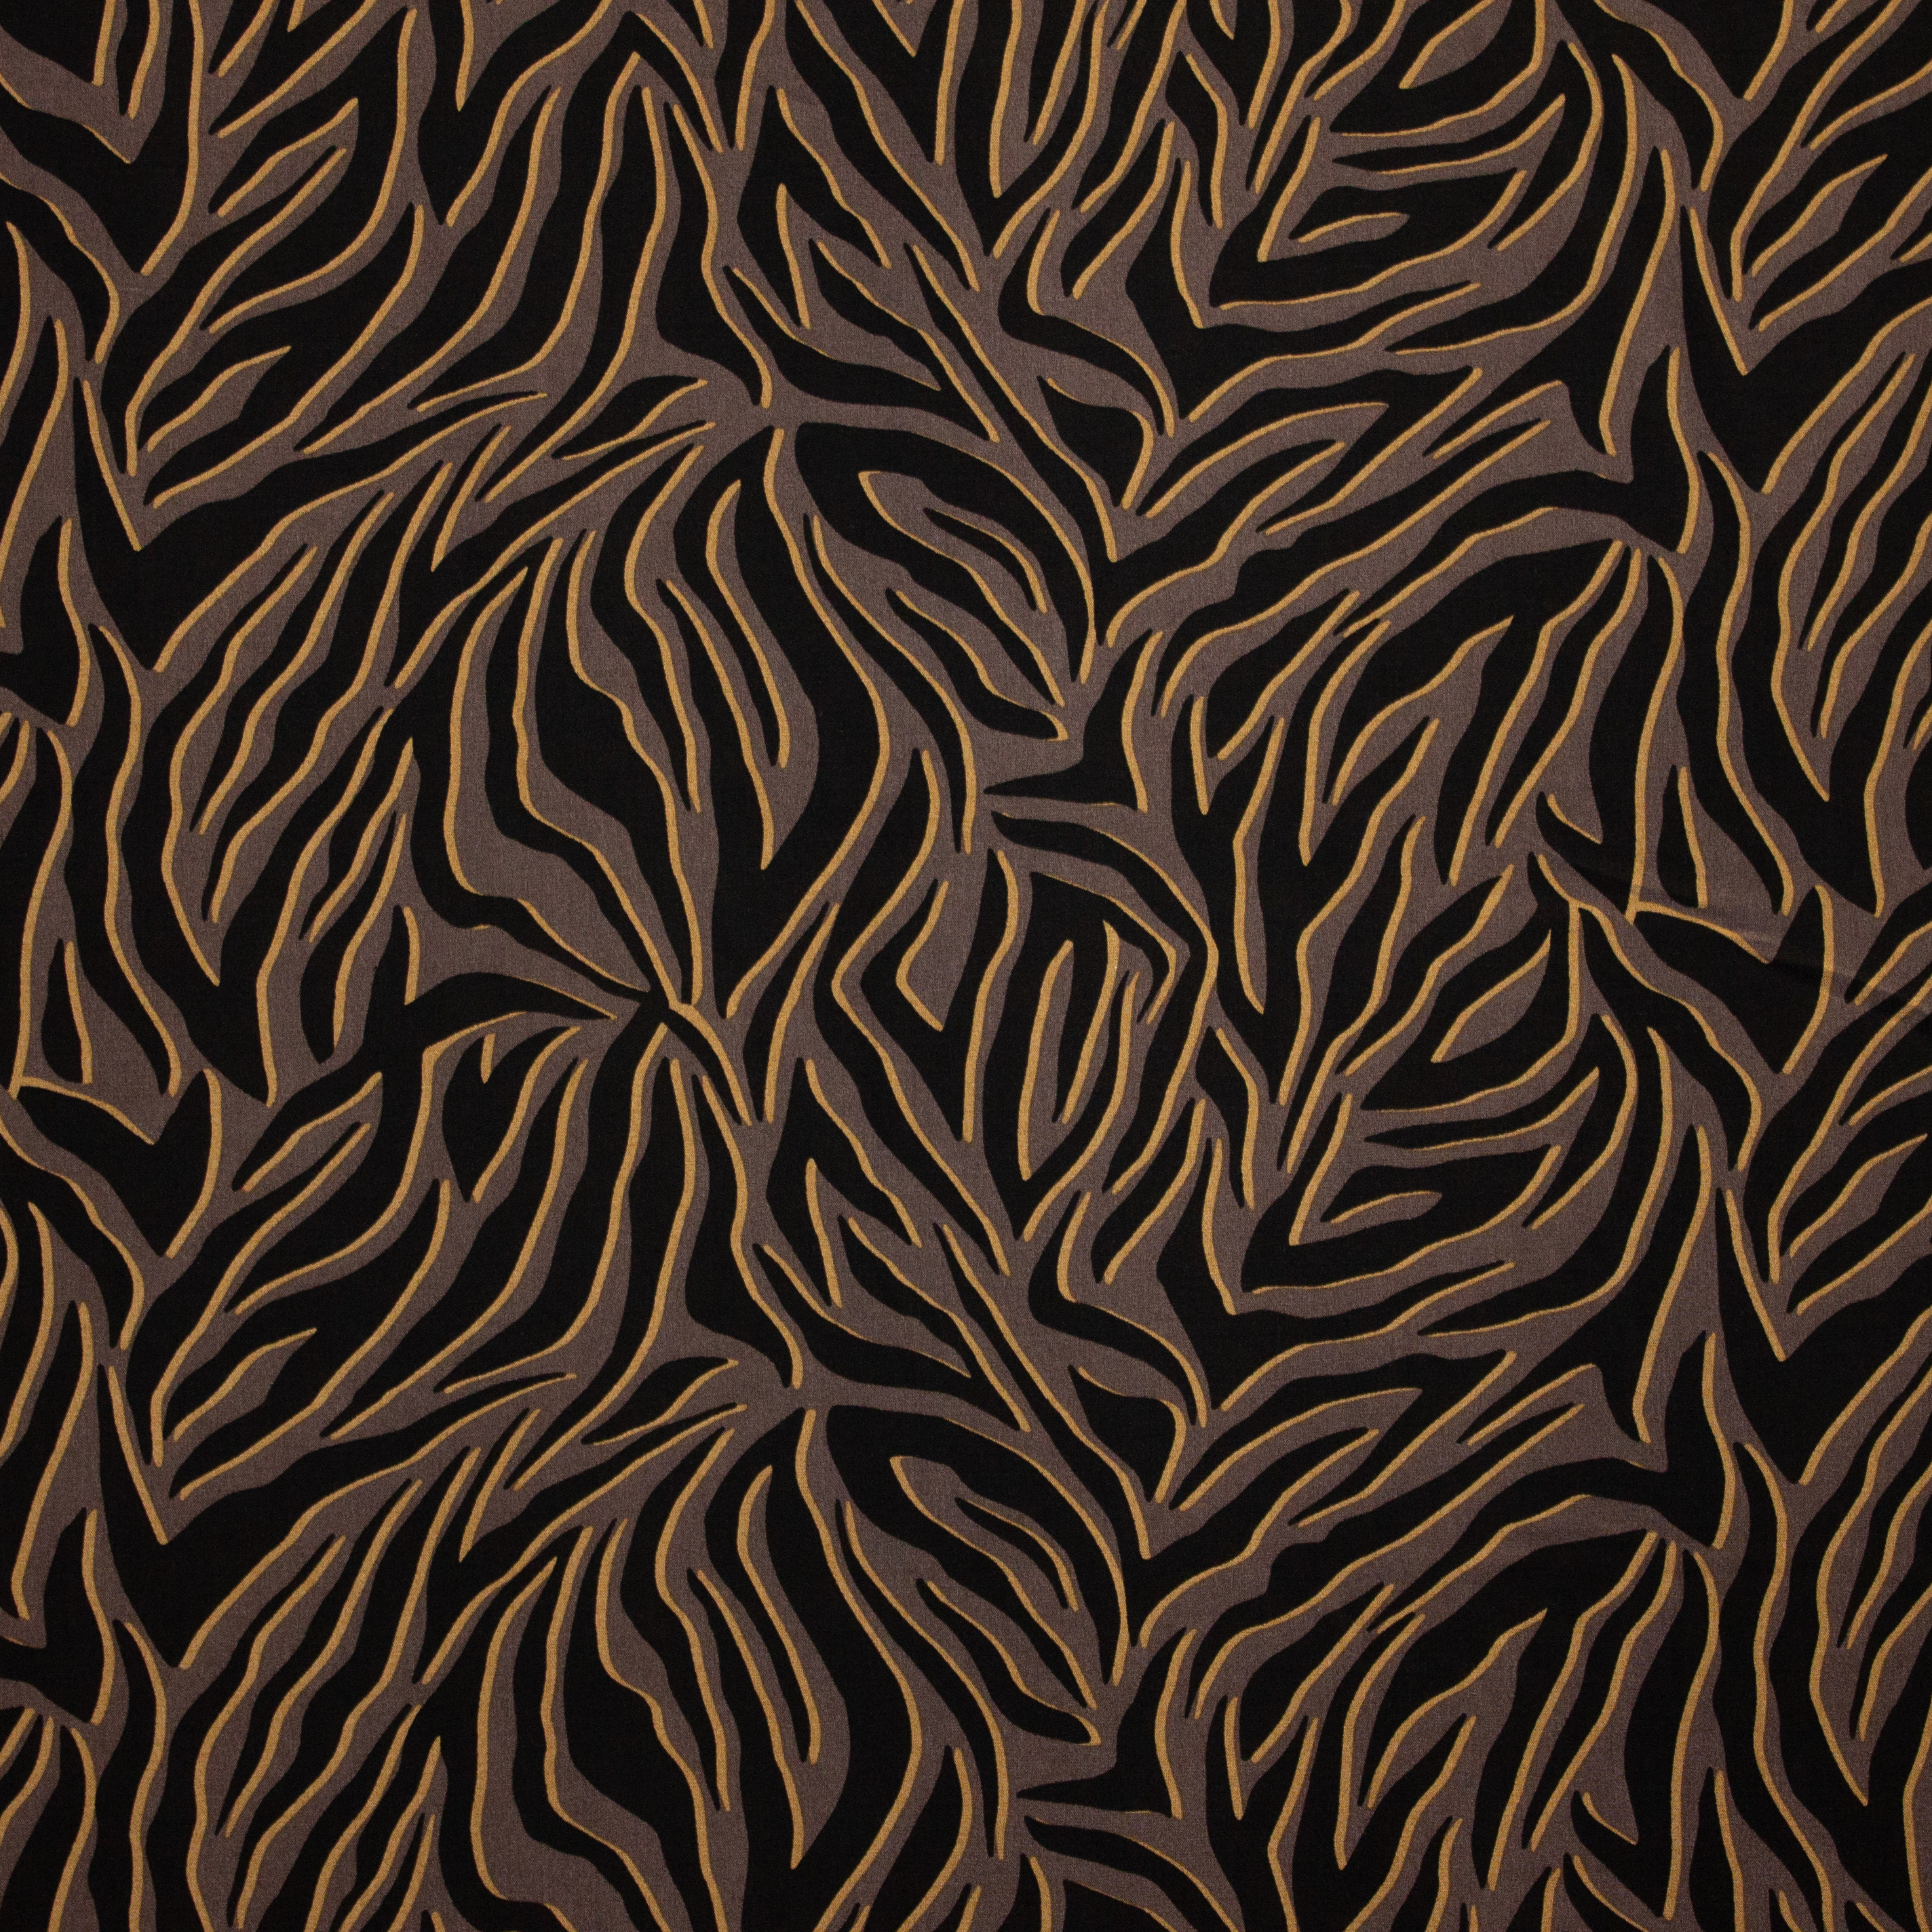 Bruine / zwarte viscose met tijgerprint